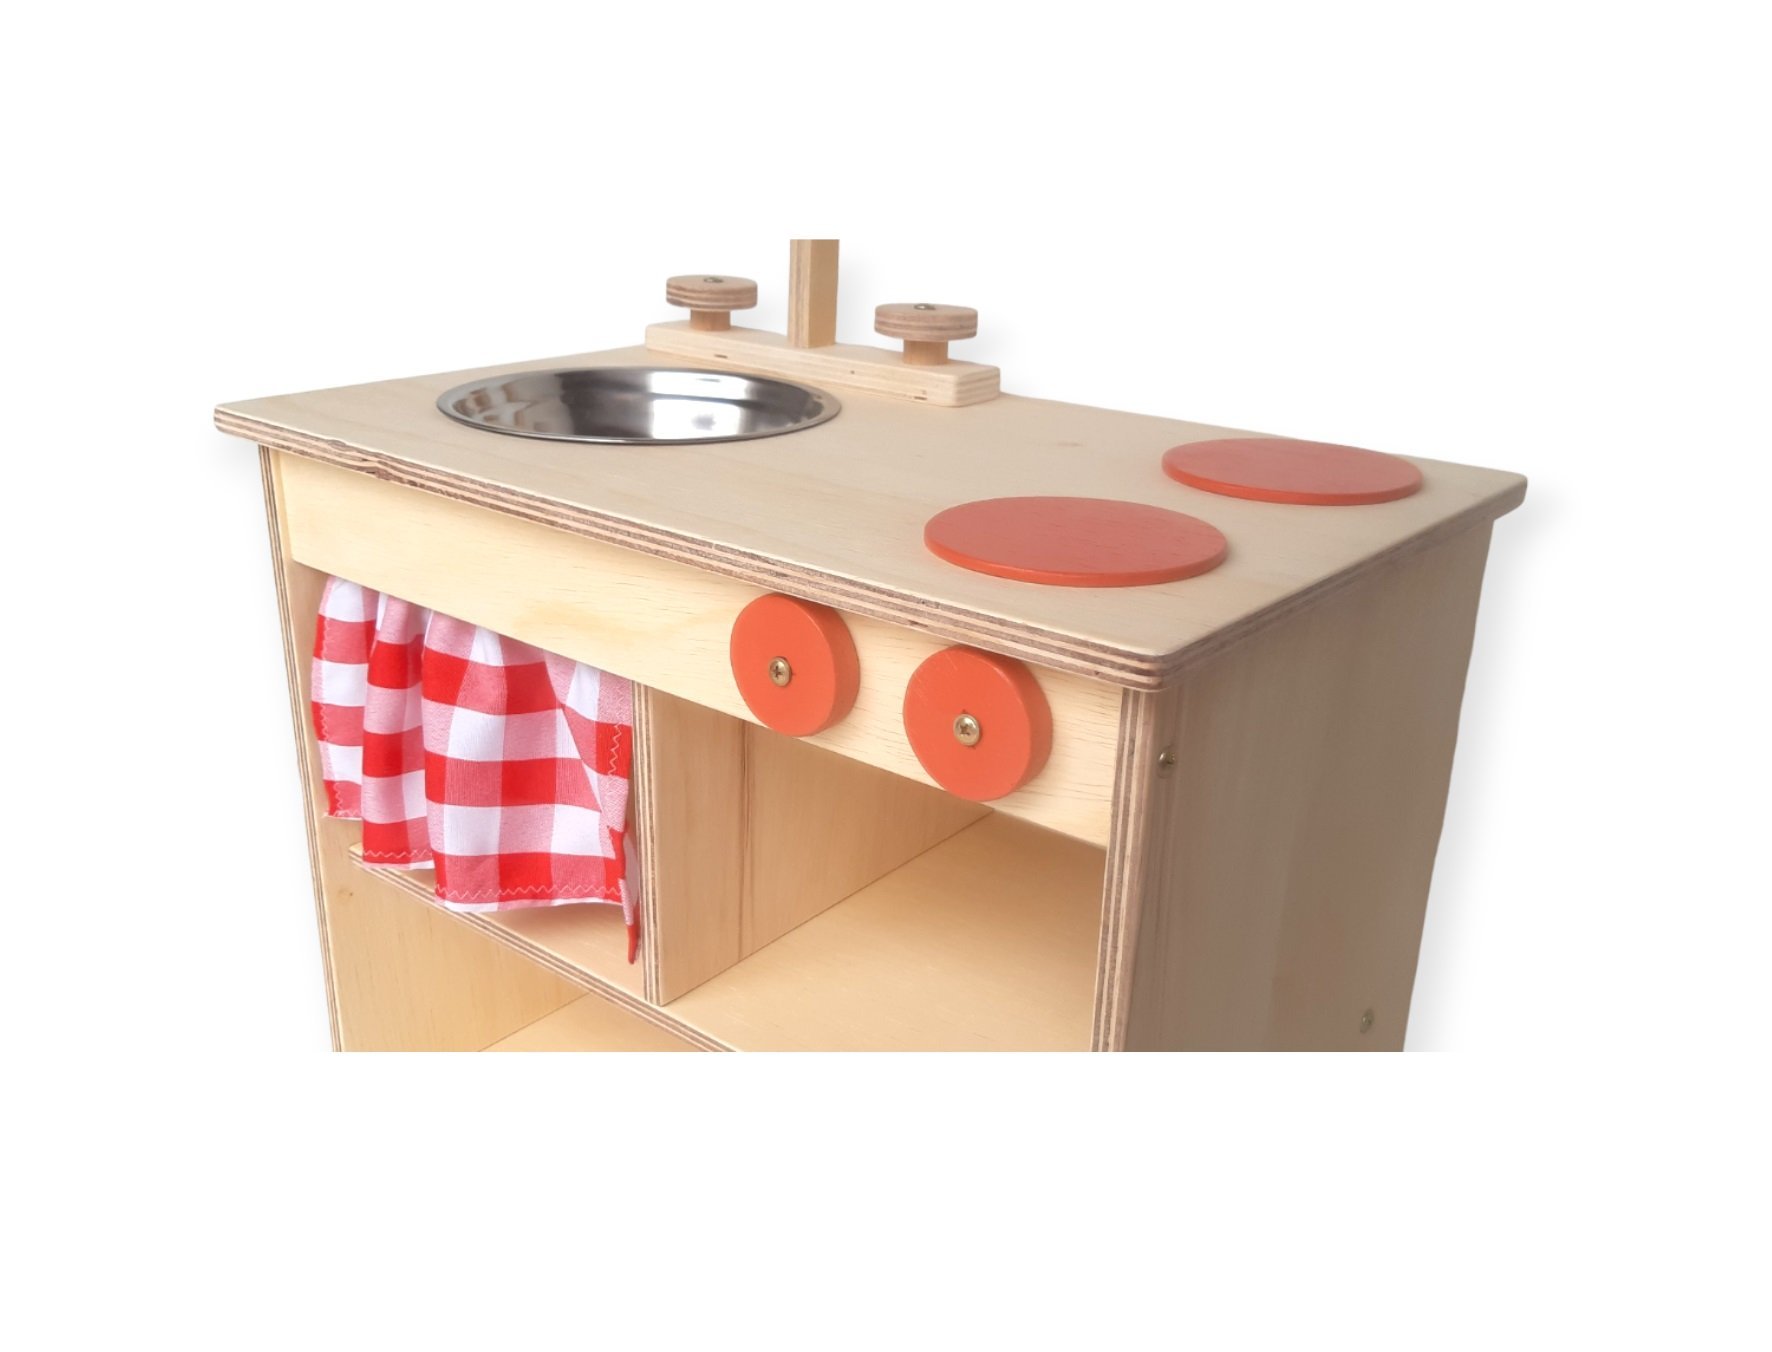 Cozinha infantil de madeira vermelha com botijão – Ateliê de madeira - 4